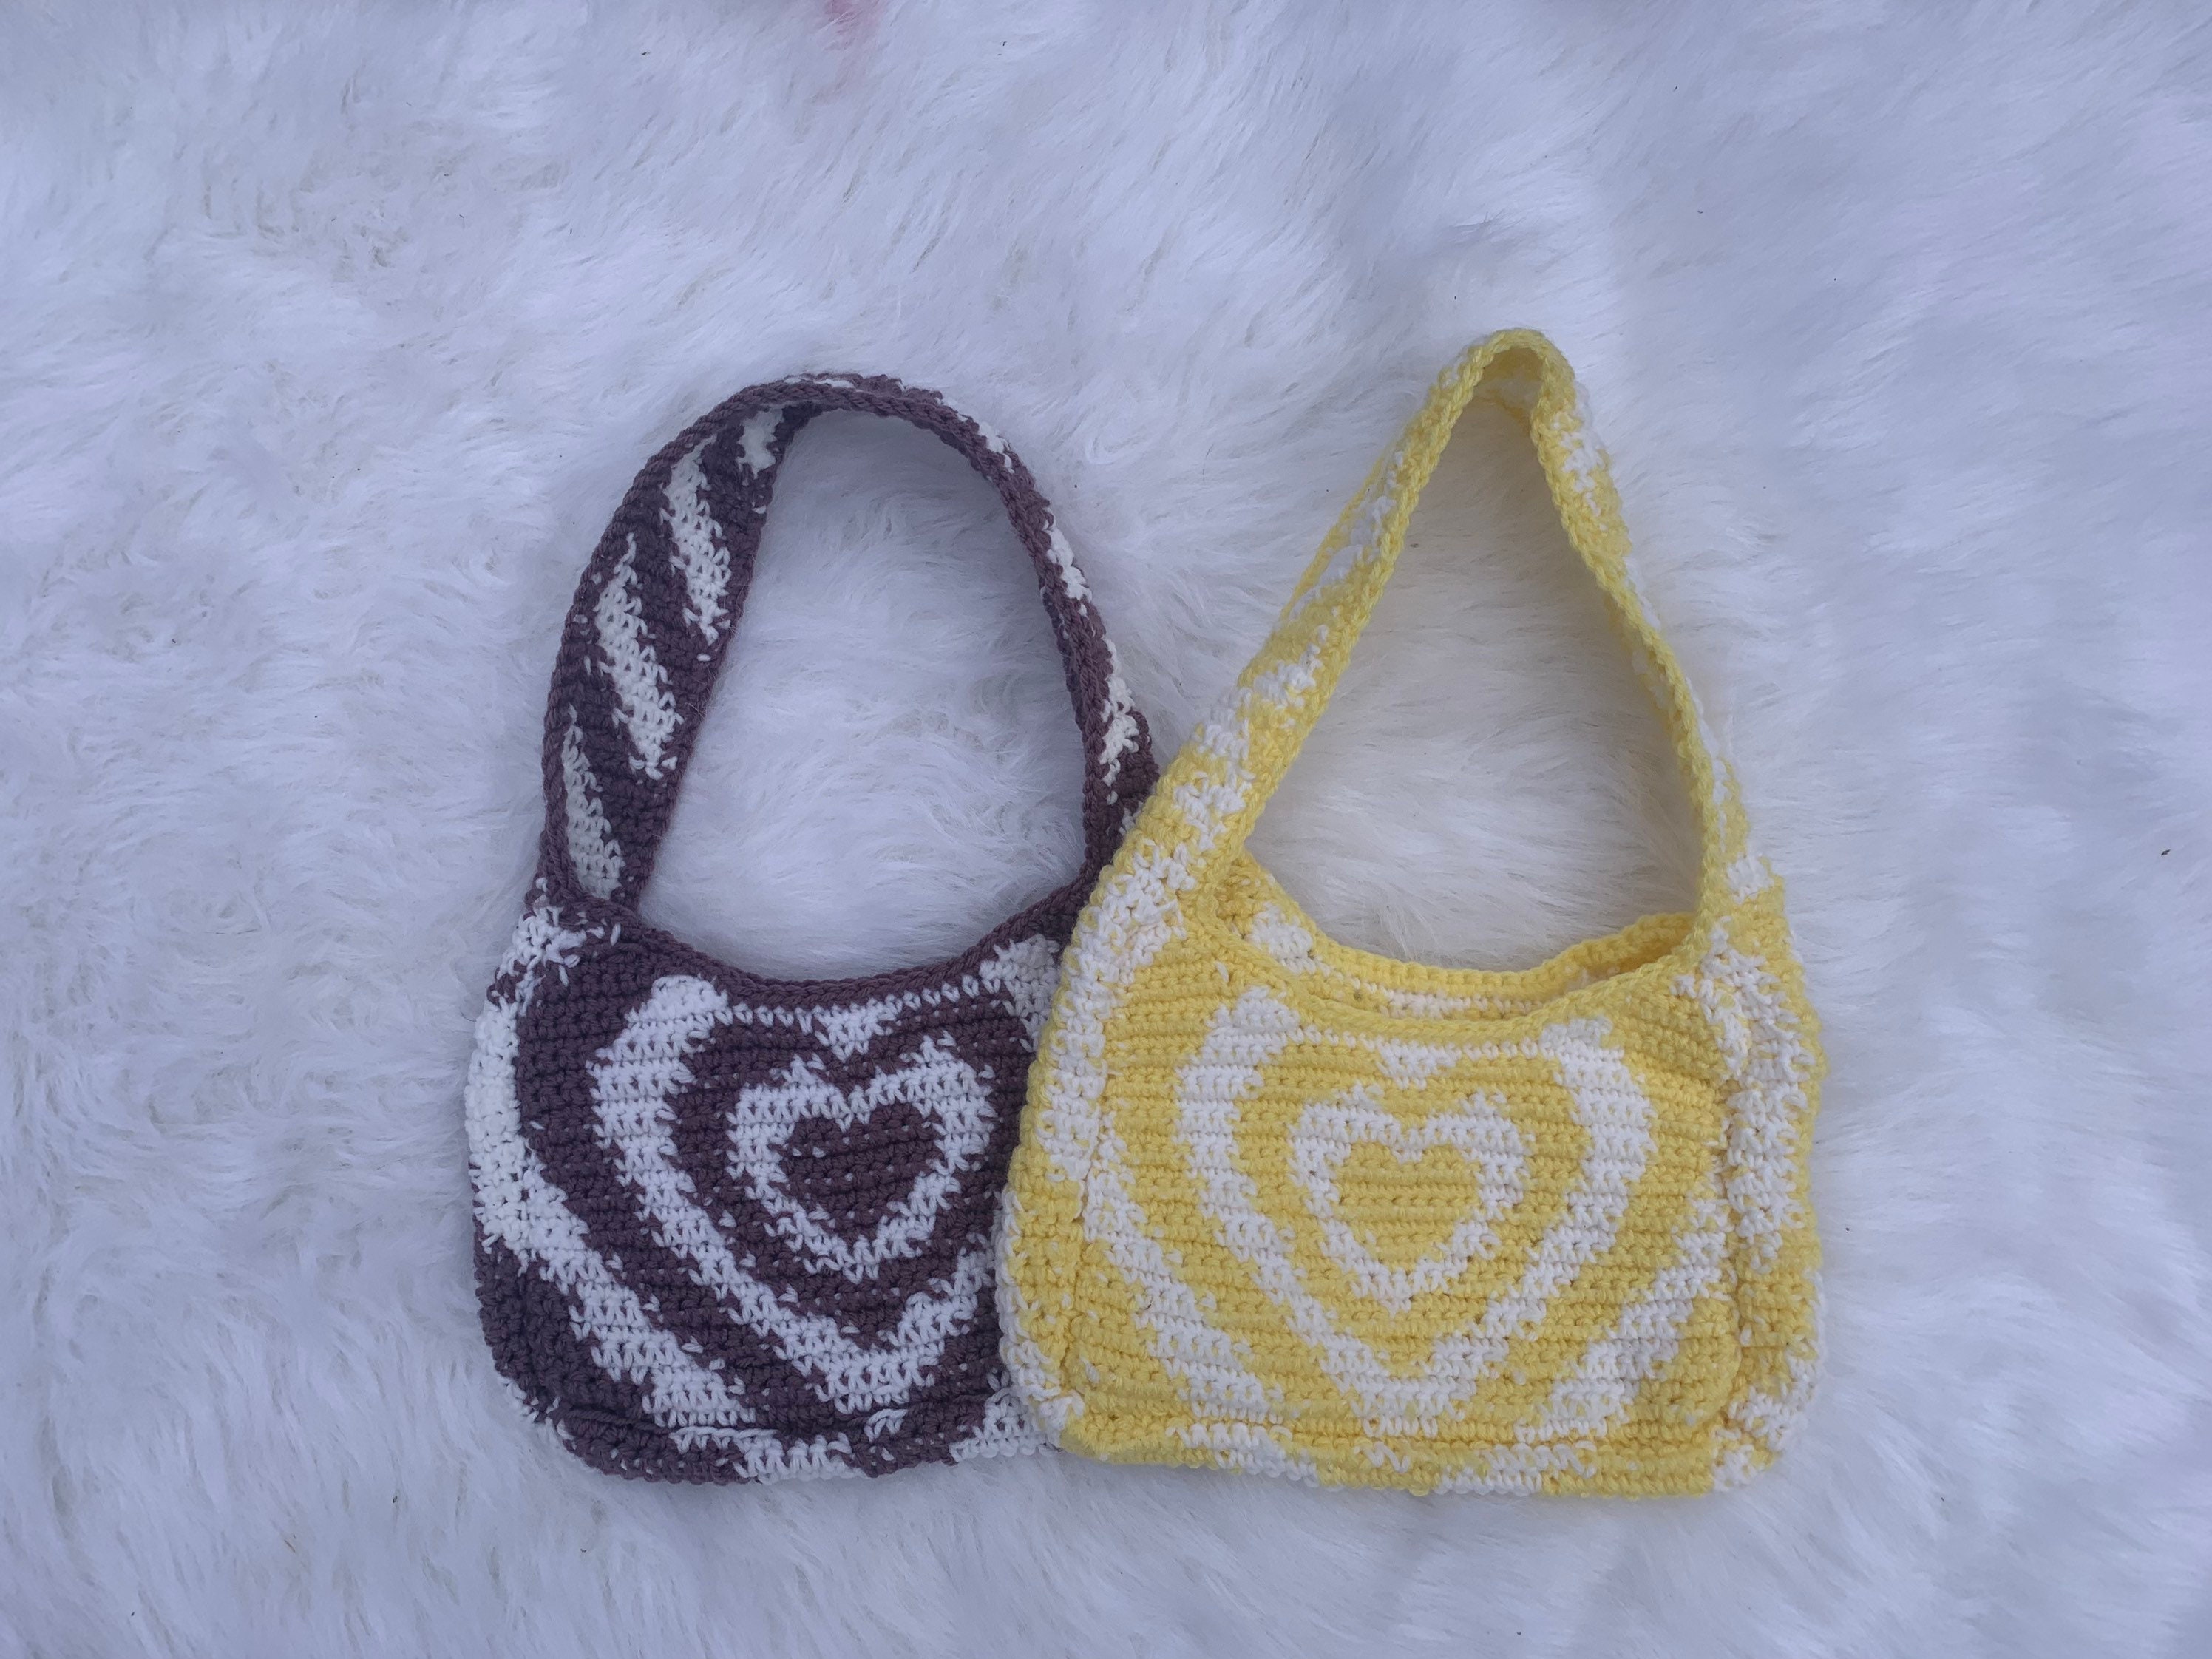 Power Puff Girls Crochet Heart Bag / Purse